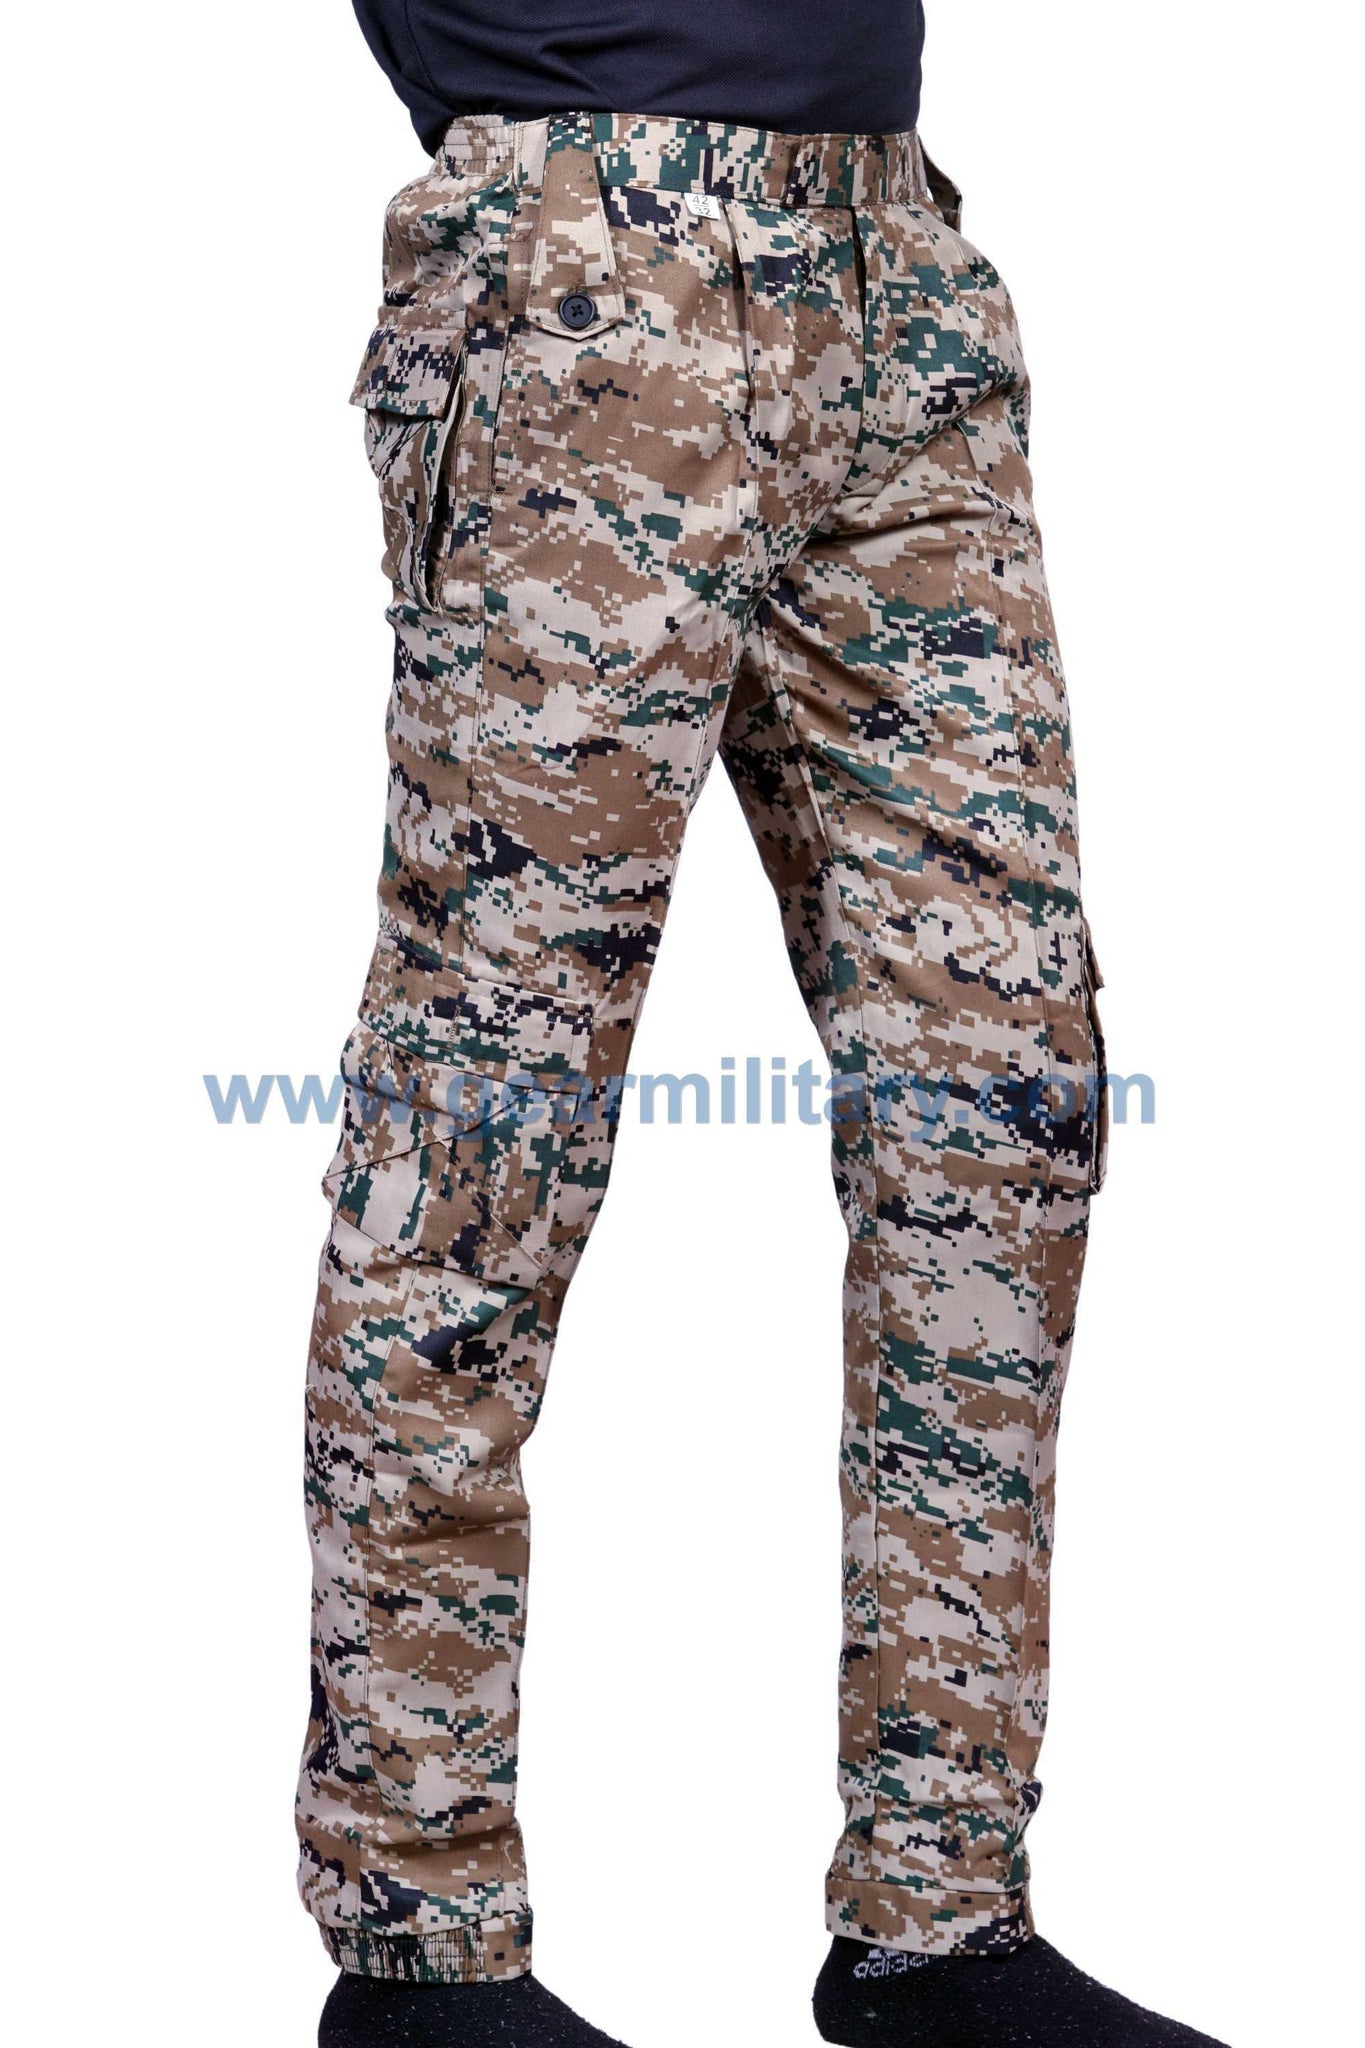 Women Army Pants Size Medium